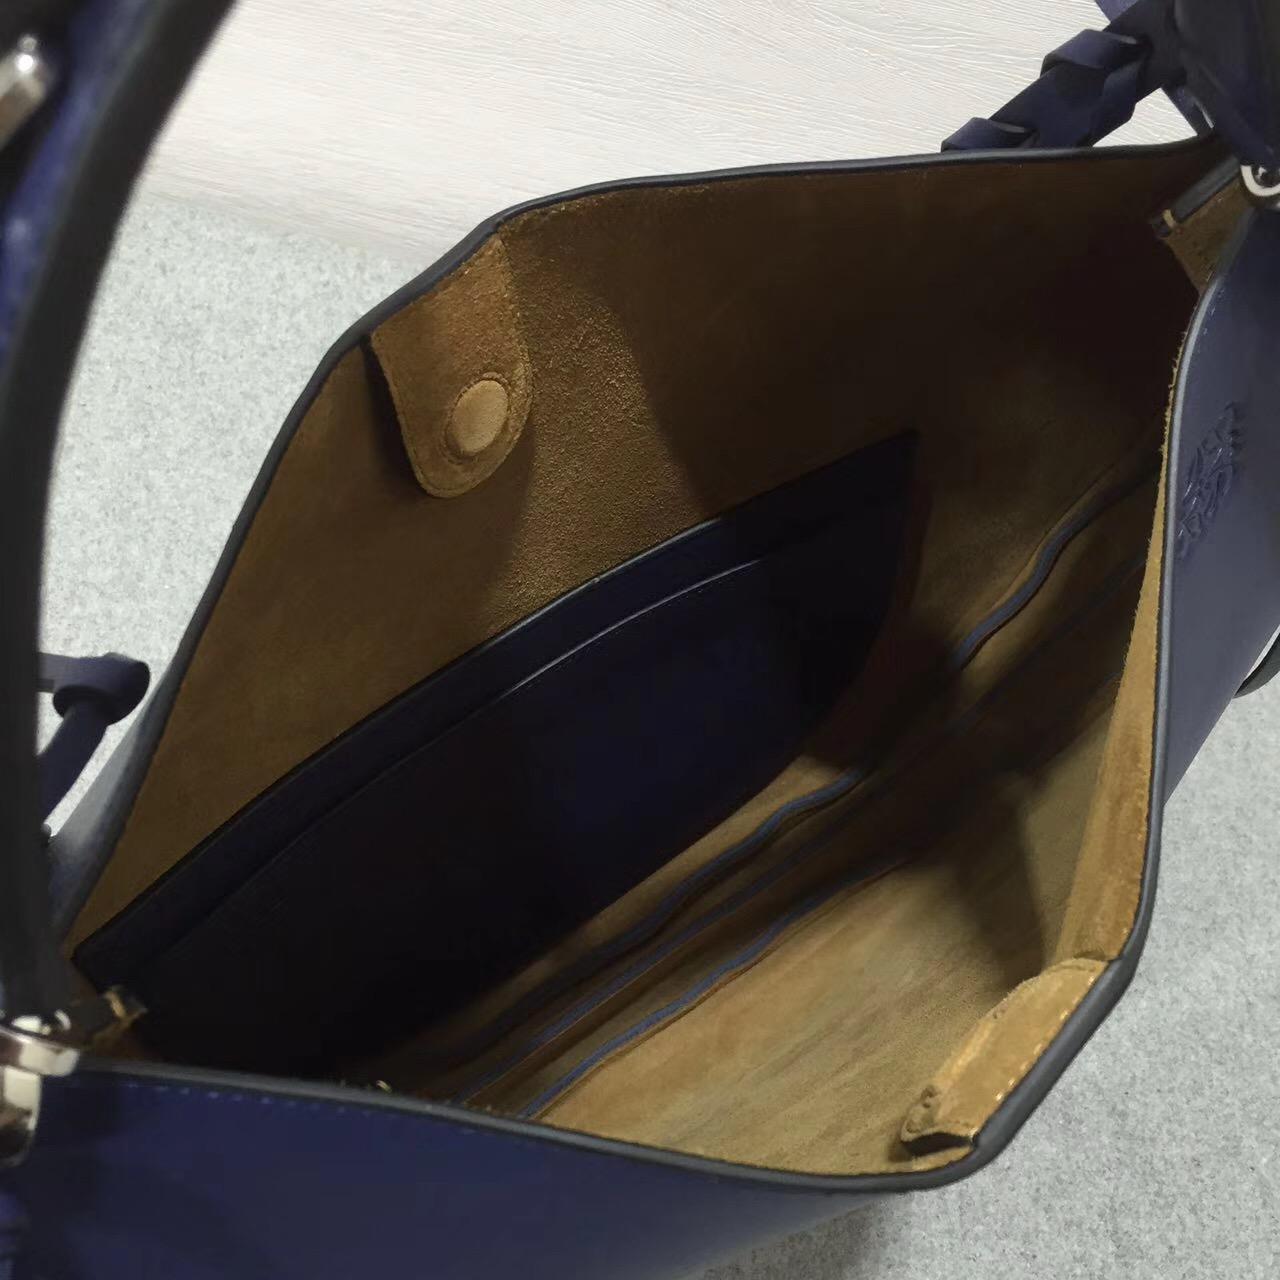 羅意威 Loewe Fortune hobo bag系列限量版半月包海军蓝色 細紋小牛皮 內襯鹿皮